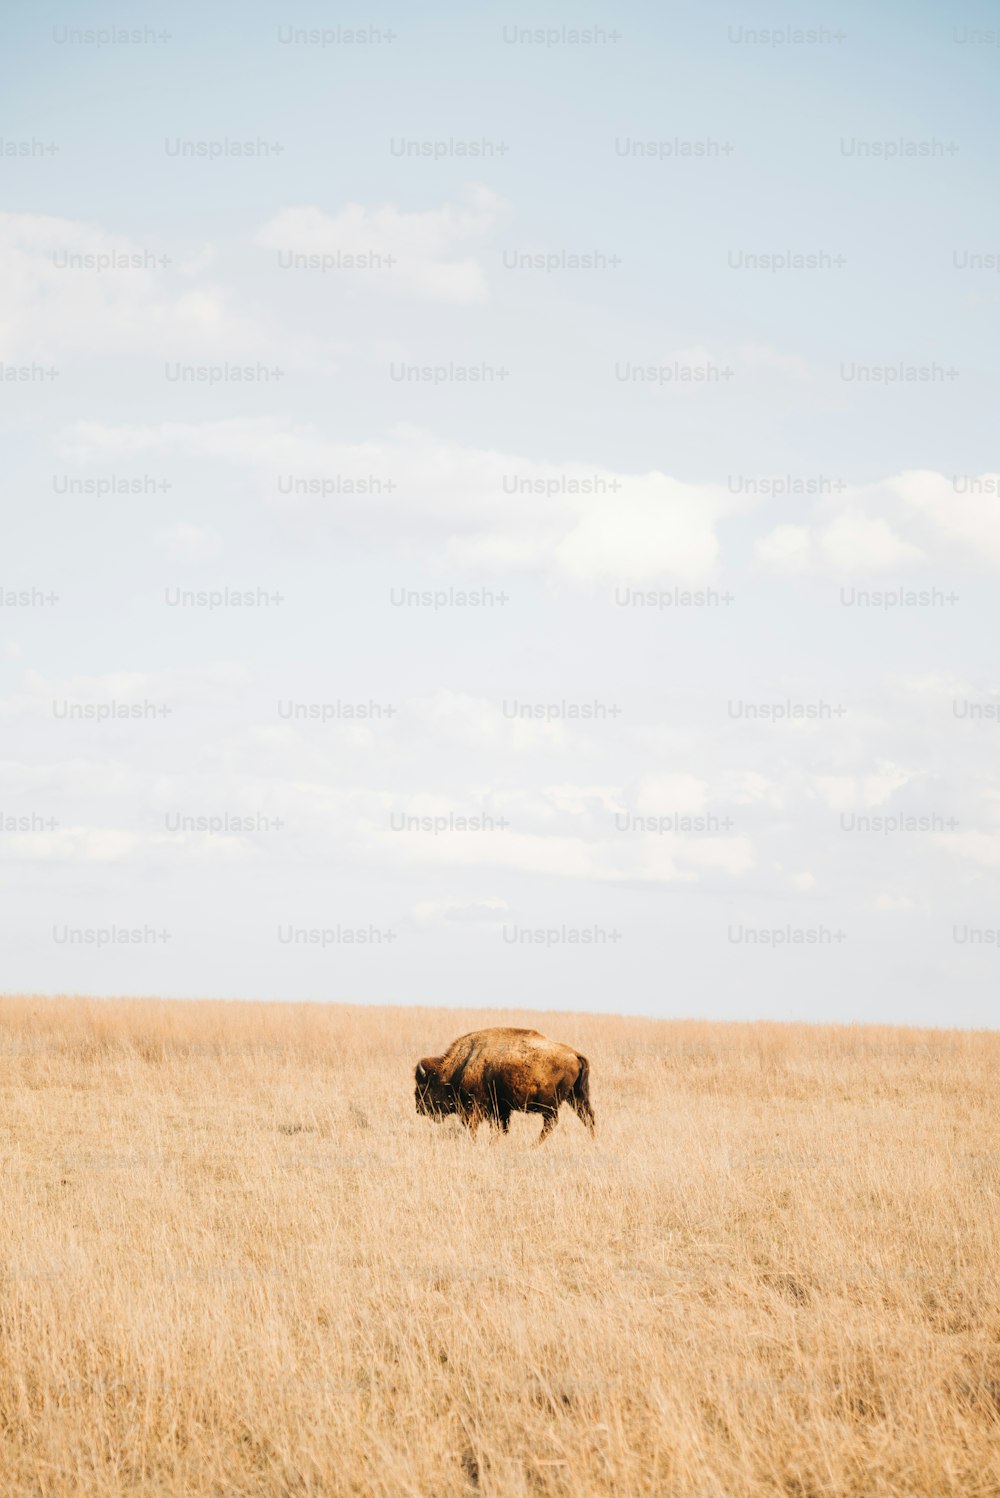 마른 풀밭 위에 서 있는 갈색 소